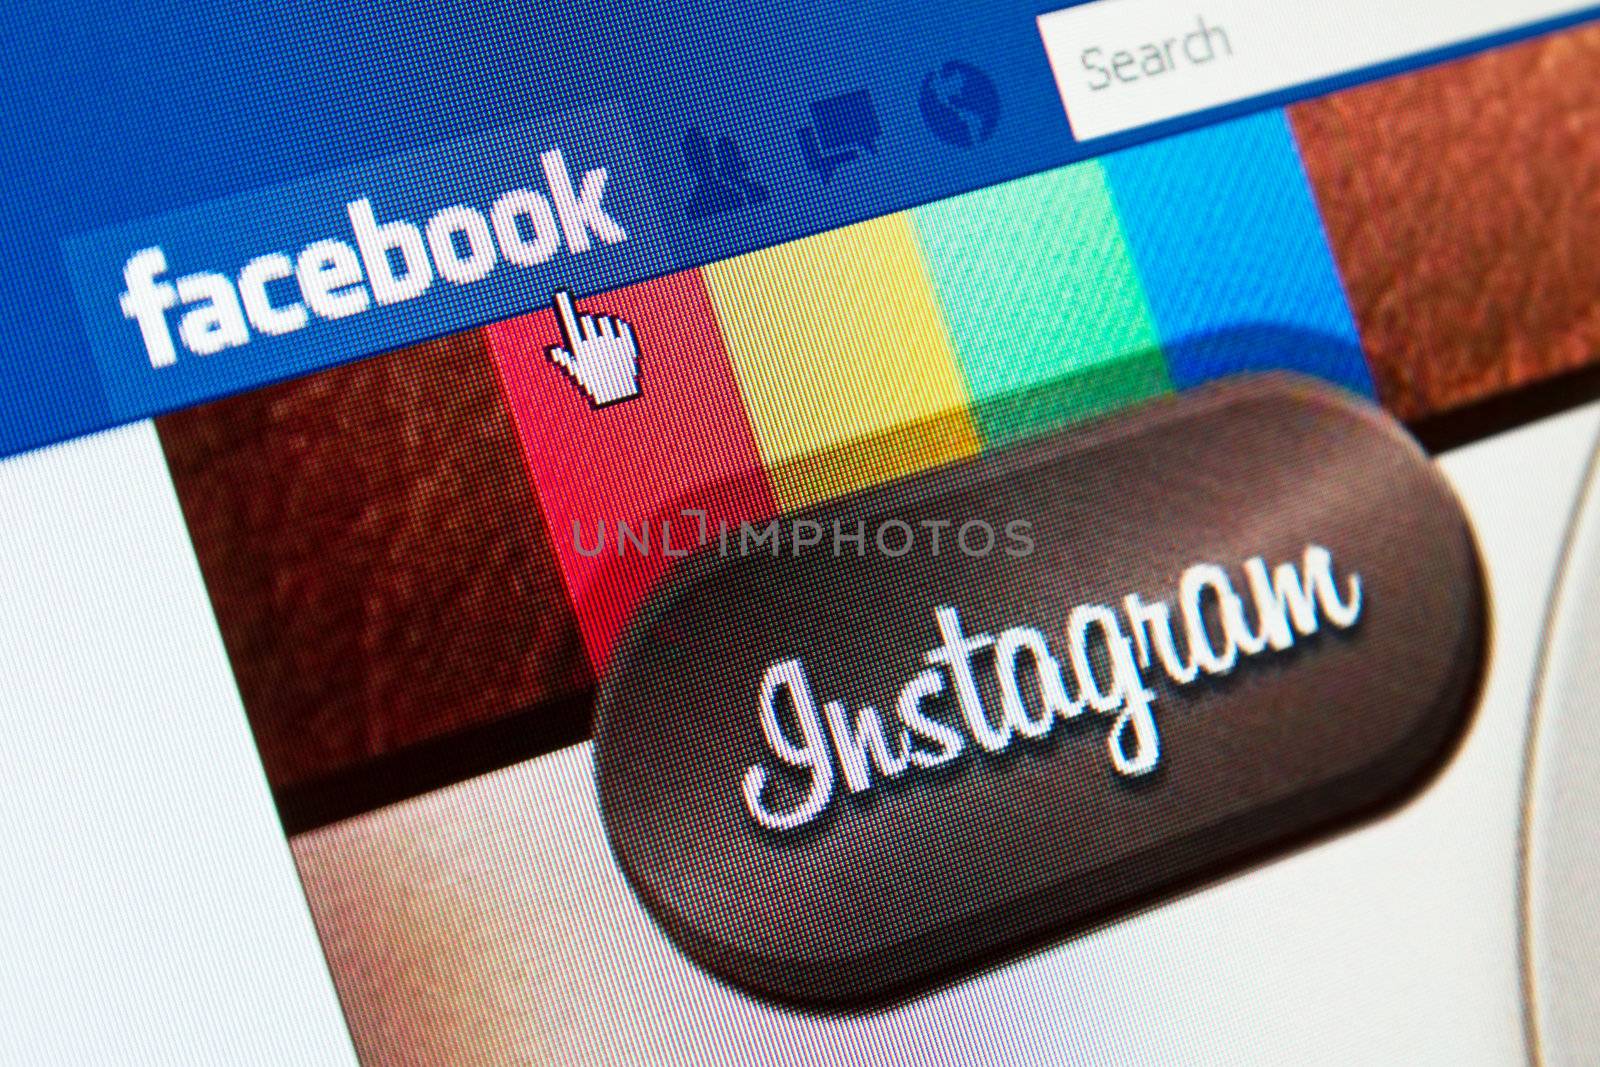 Facebook Buys Instagram by bloomua